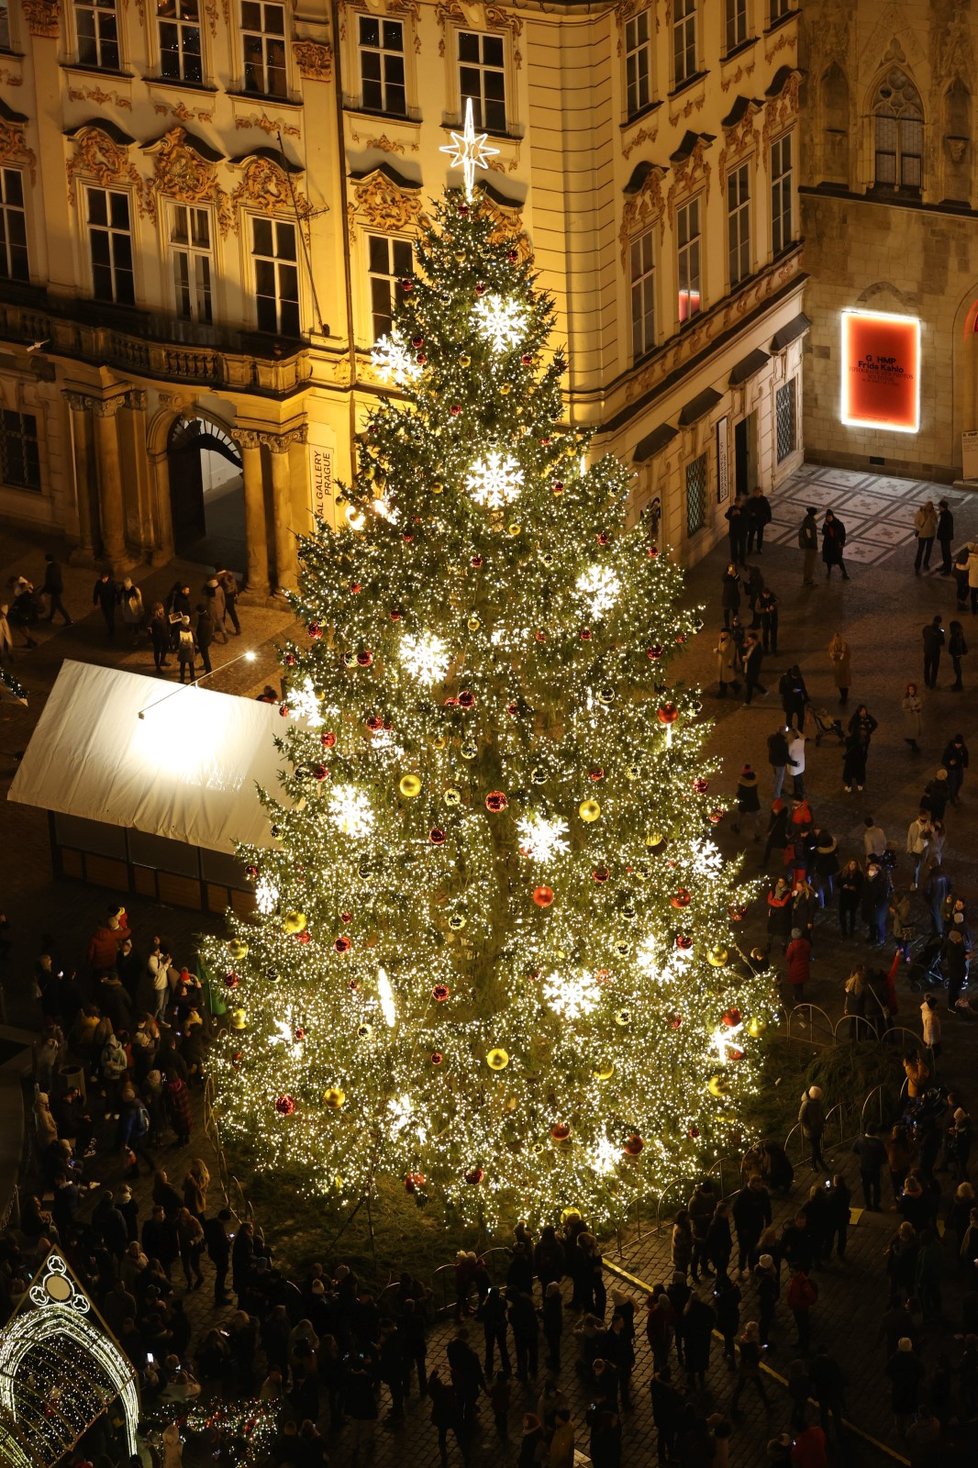 Ani zrušení vánočních trhů neodradily stovky lidí, Staroměstské náměstí bylo plné.